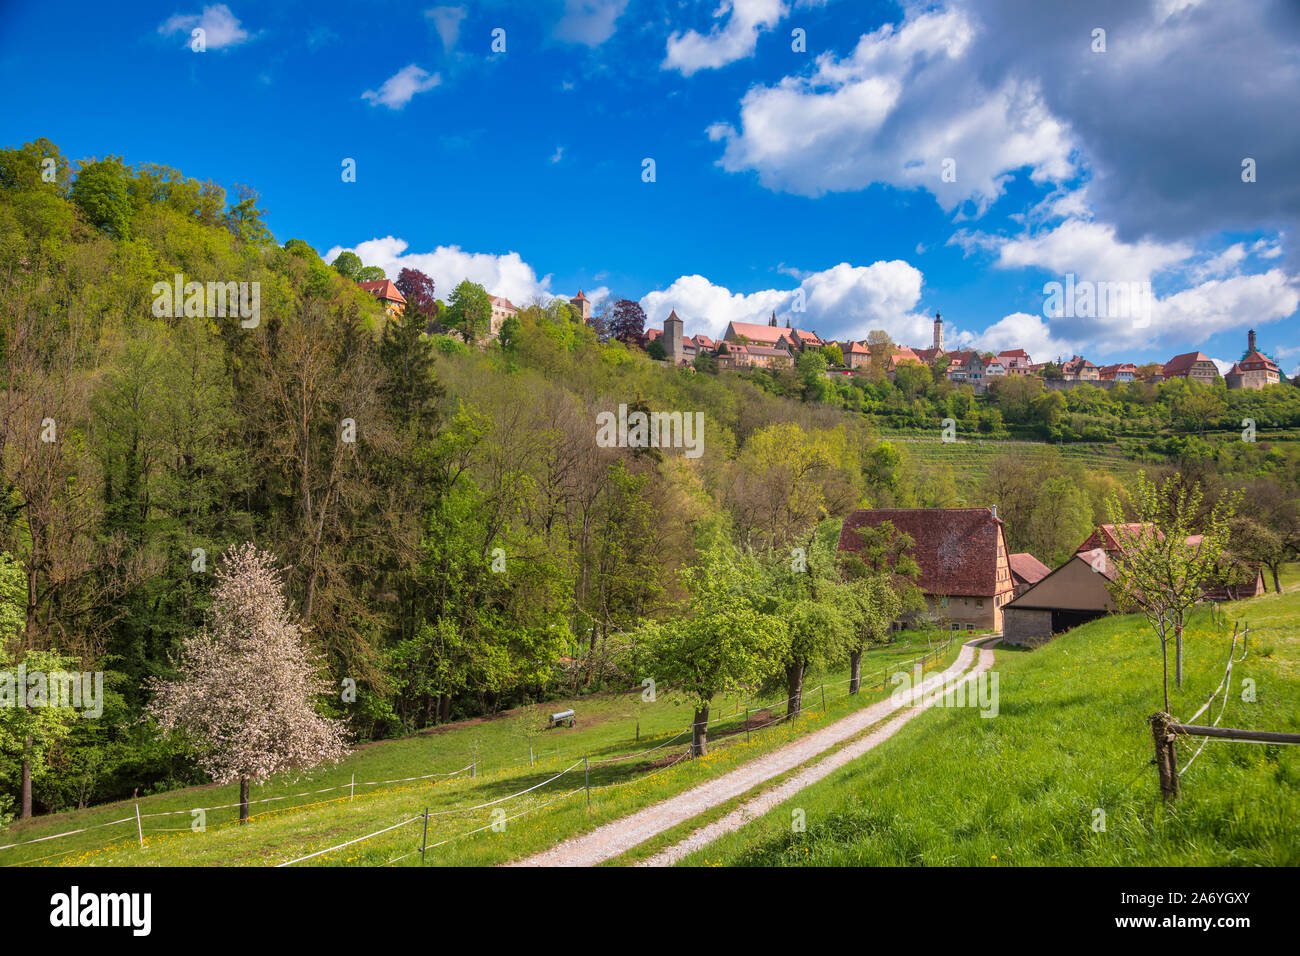 Malerische Skyline von Rothenburg o.d. Tauber, Bayern, Deutschland, Europa, eines der beliebtesten Reiseziel auf der Romantischen Straße touristische Route als s Stockfoto